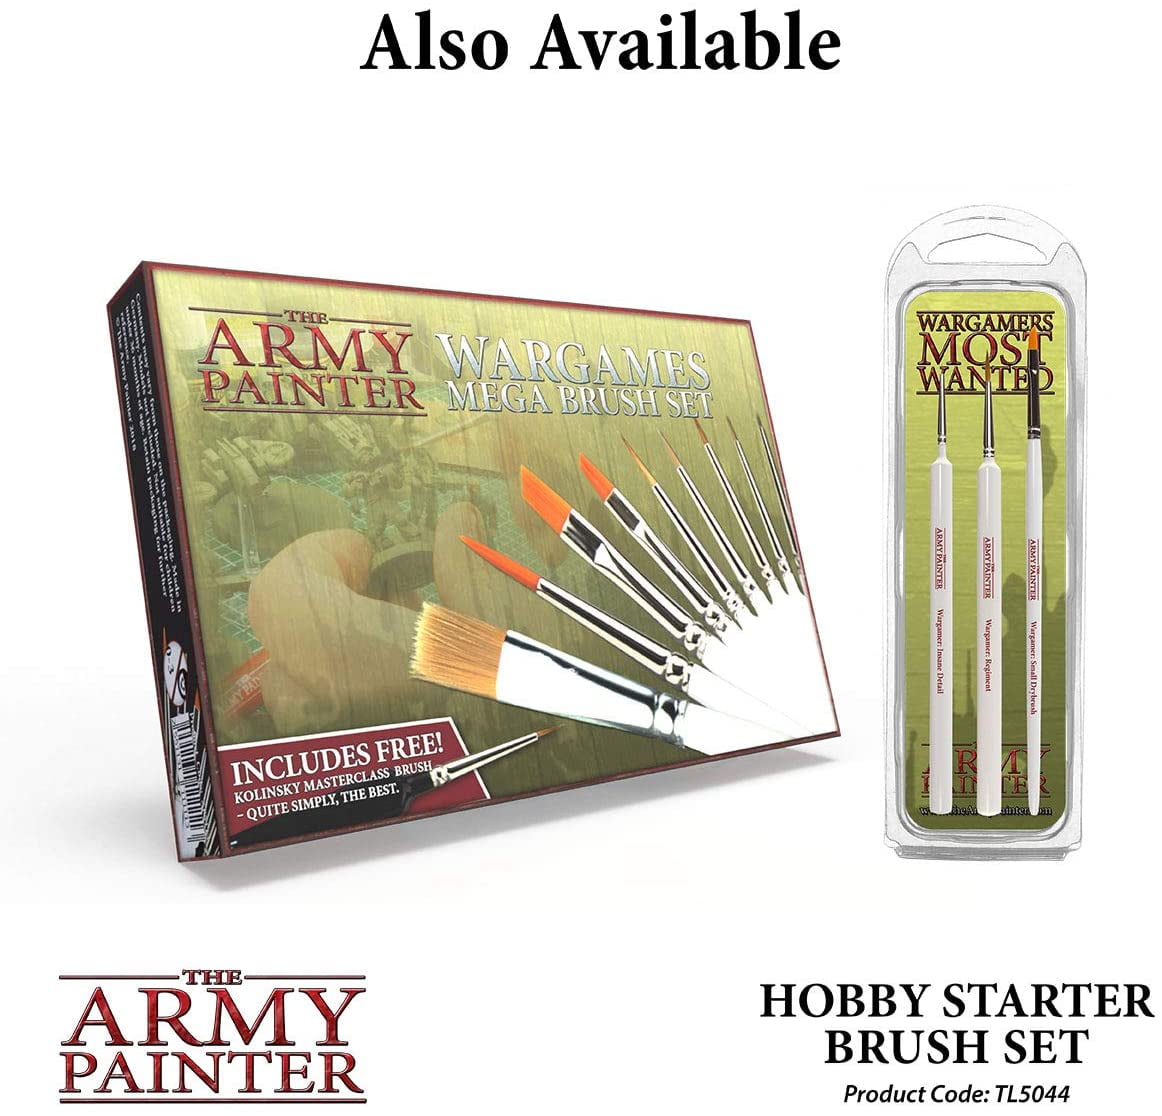 Hobby Brush Set The Army Painter Hobby Starter 